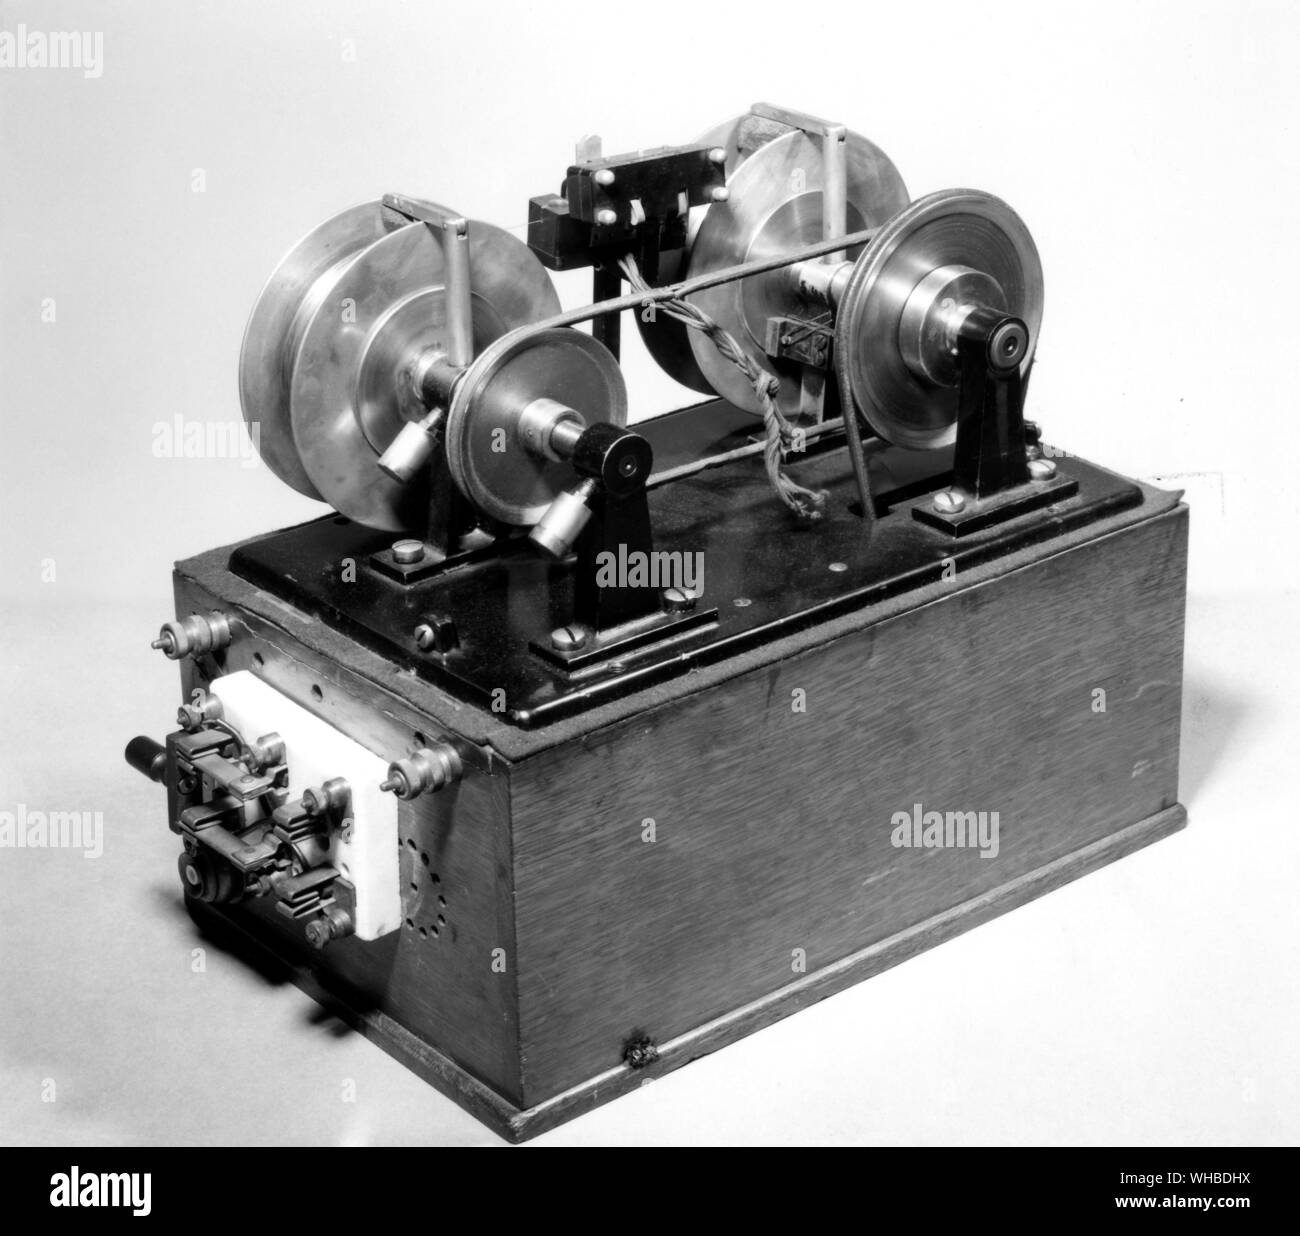 - Telegraphone le magnétophone a été inventé il y a quelques années après le phonographe, mais la plupart des gens n'auraient jamais entendu parler avant les années 1950. À la fin des années 1870, un ingénieur de New Jersey nommé Oberlin Smith a eu l'idée d'un enregistreur 'Magnétique' après avoir vu les travaux d'Edison sur le phonographe et le téléphone. À l'aide d'un téléphone, d'un électro-aimant, et un long morceau de fil, il a été capable de capturer le son comme une région de magnétisme variables plutôt que comme une rainure ondulées. Smith n'a jamais démontré l'enregistreur, mais au début des années 1890, l'inventeur danois Valdemar Poulsen soit lire Banque D'Images